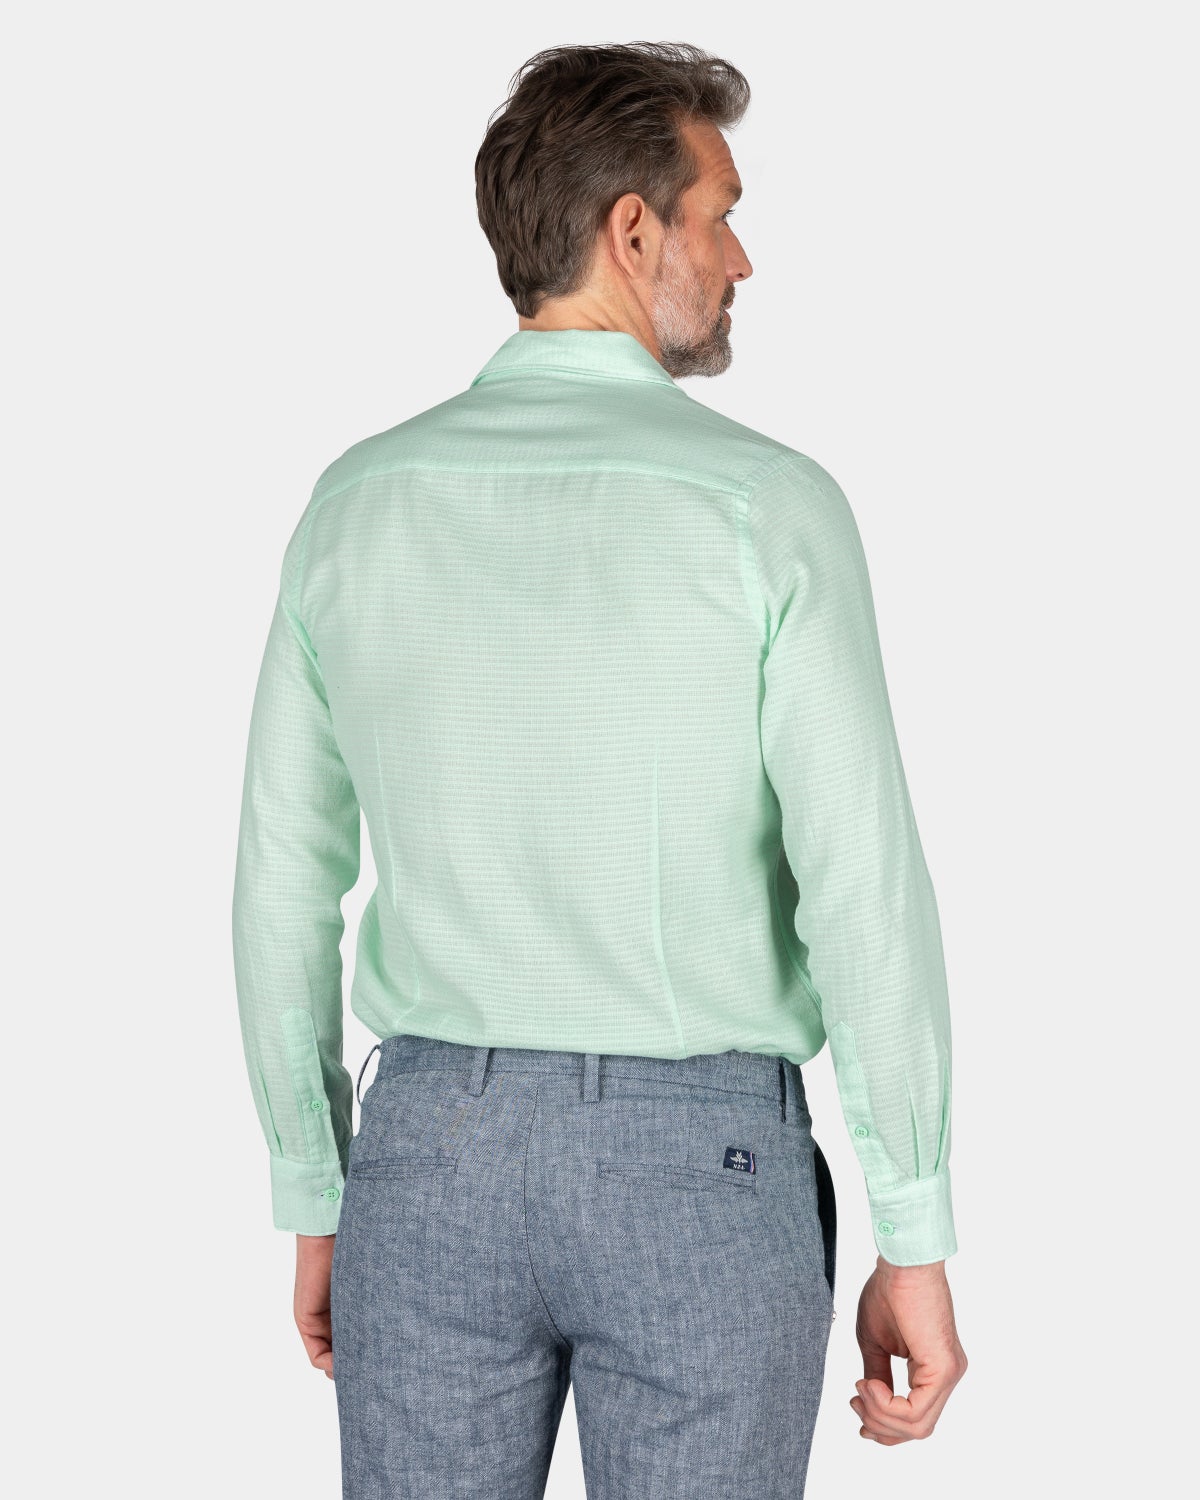 Cotton shirt - Teal Green